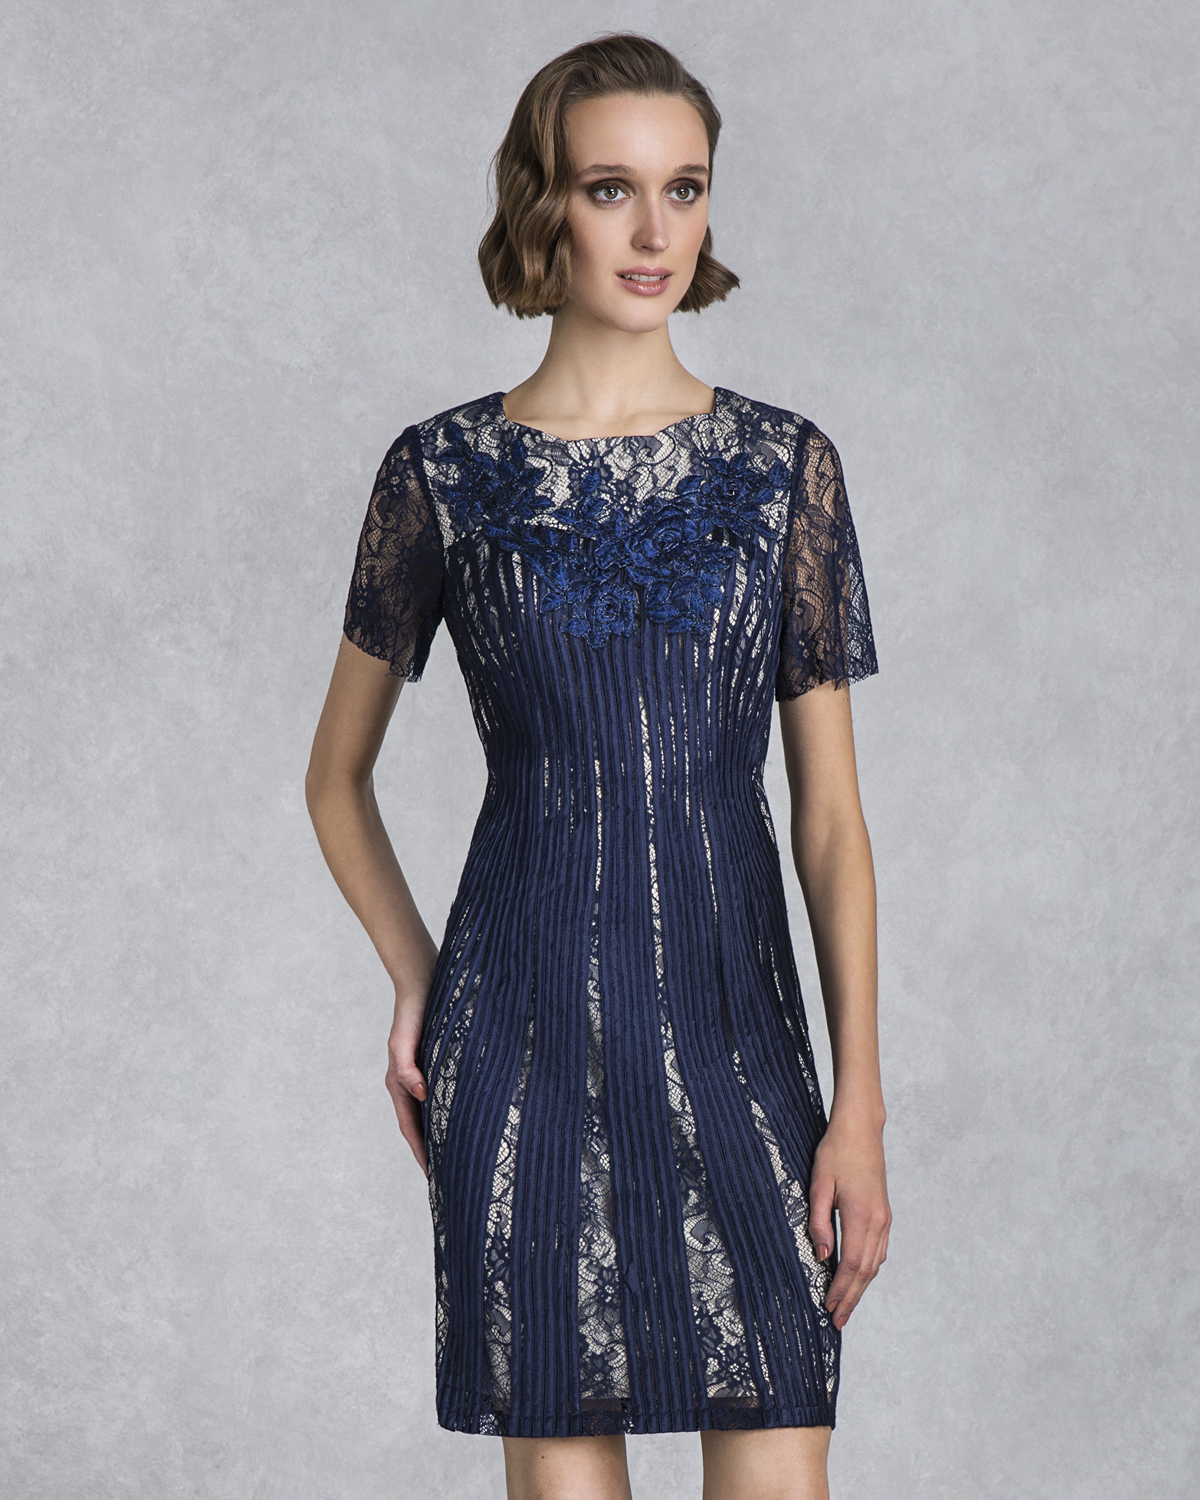 Классические платья / Short evening lace dress